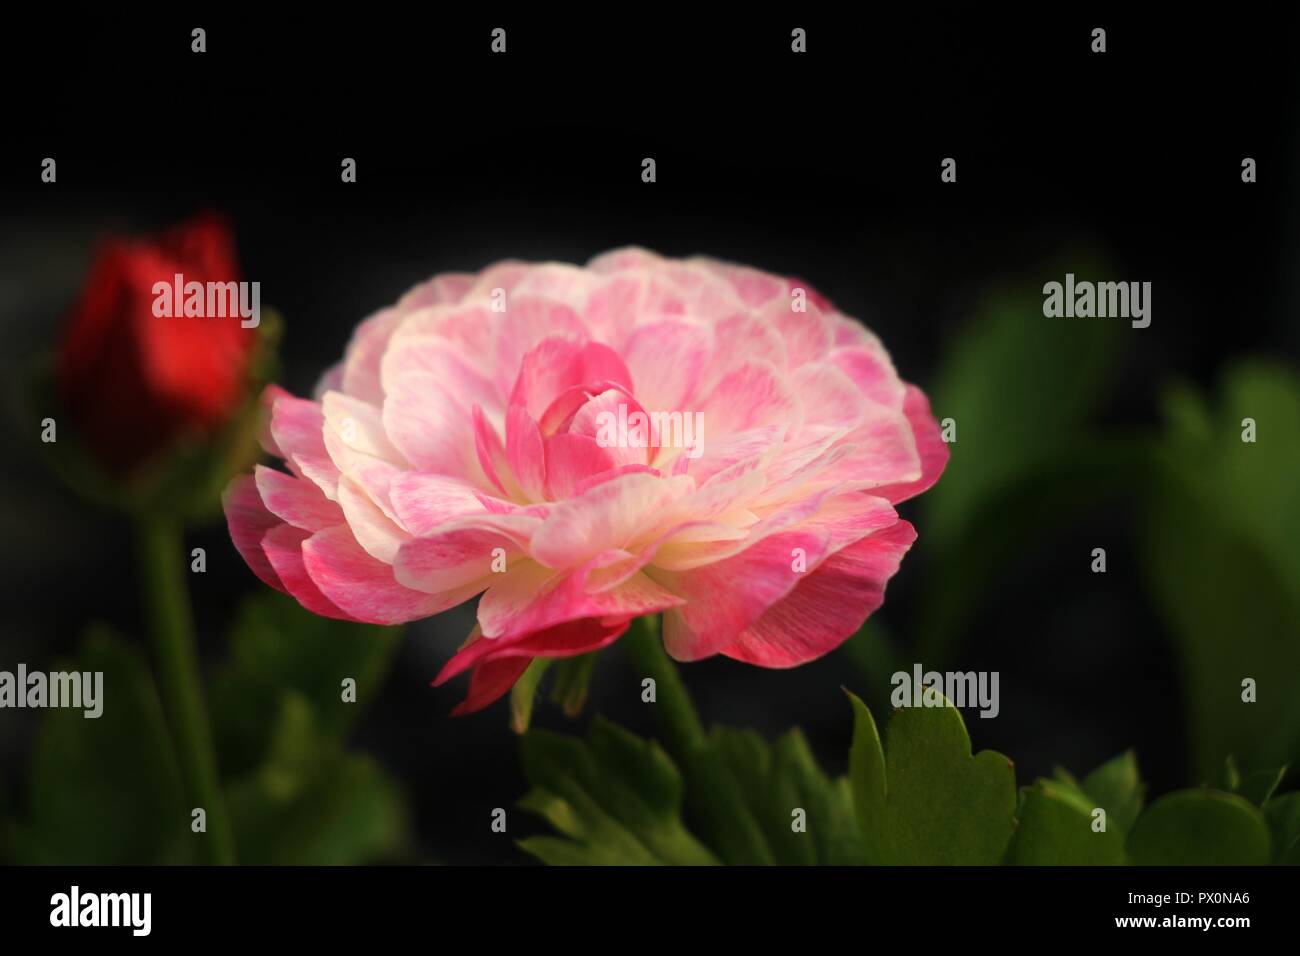 Rosa und weissen Ranunkeln Blume gegen grüne Blätter und schwarzen Hintergrund. Stockfoto